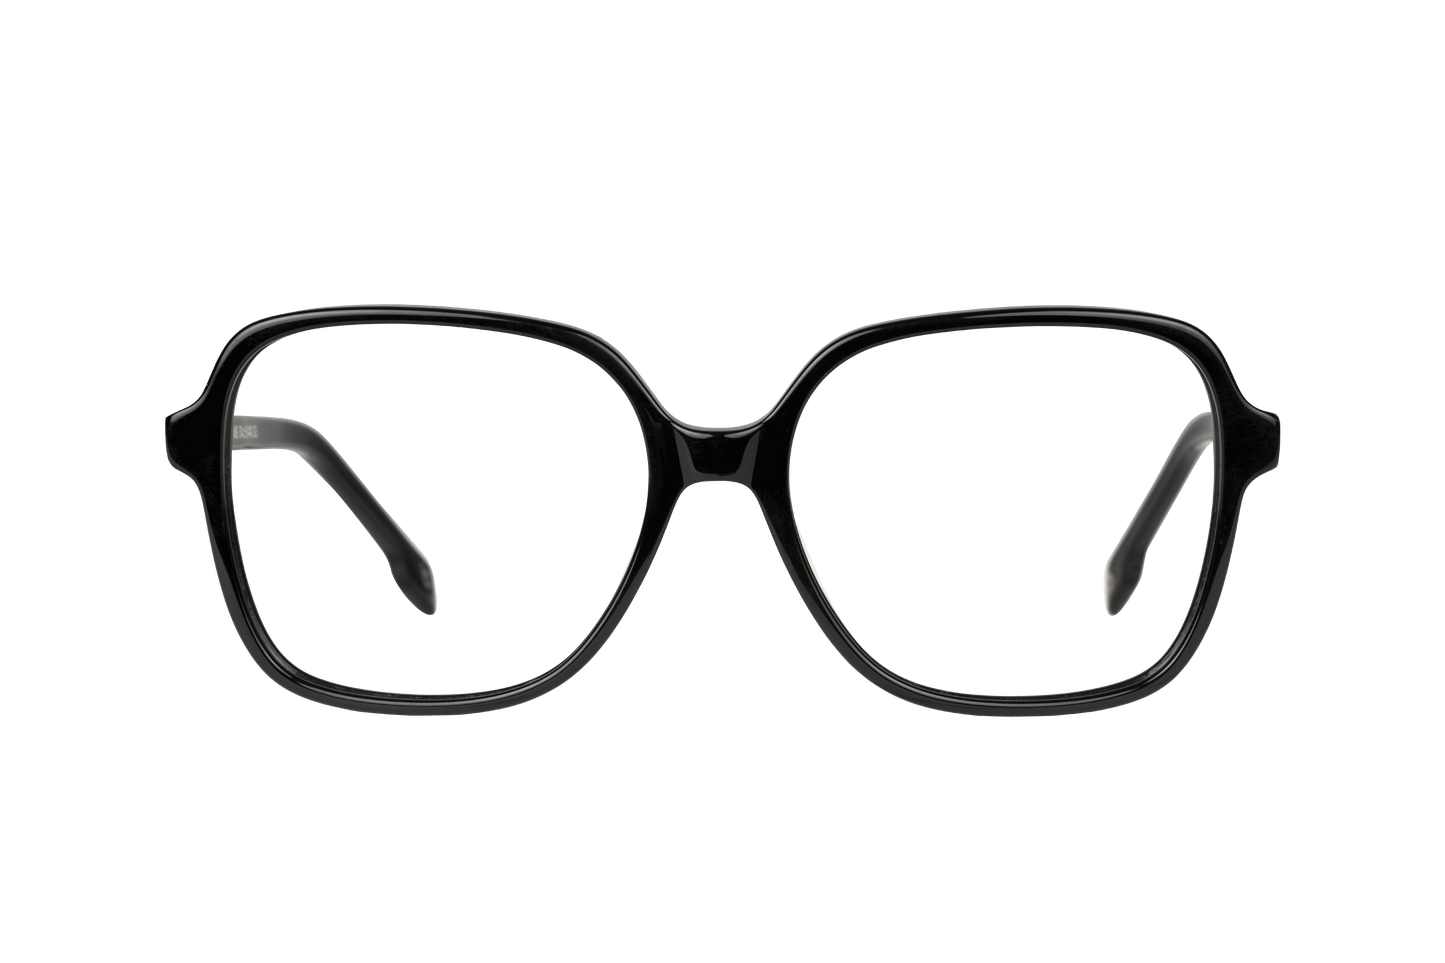 GAIA NOIR - lunettespourtous